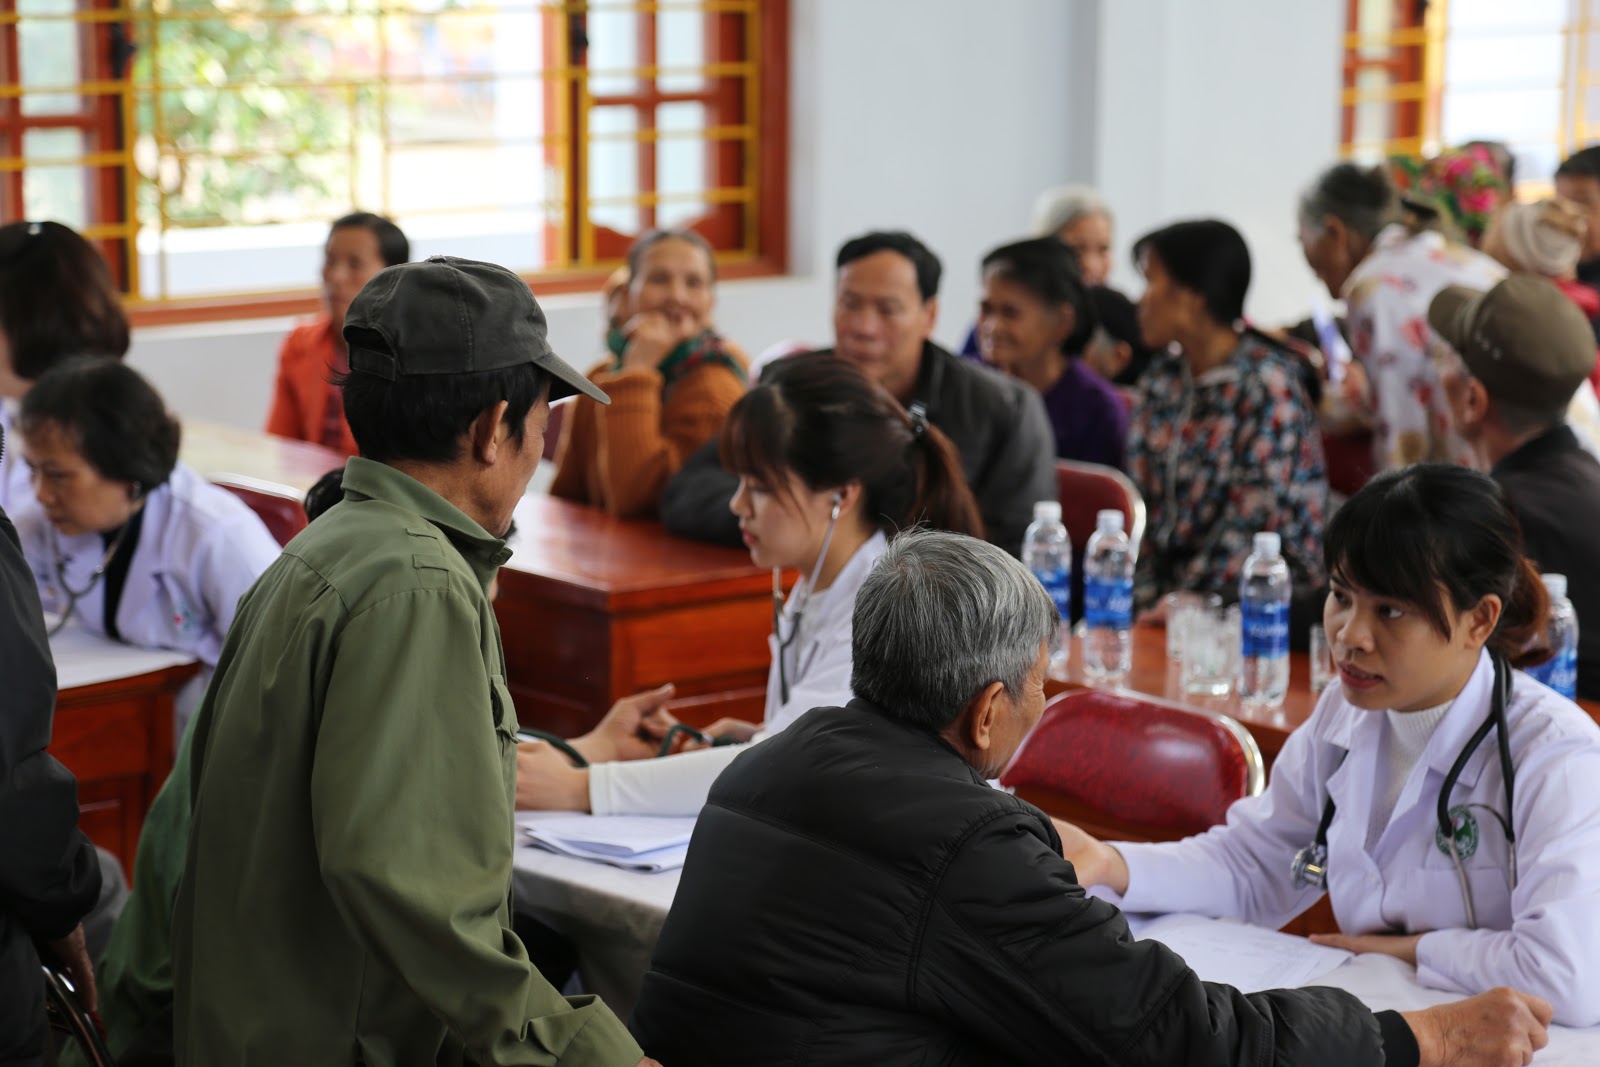 BVĐK Đức Giang mang “Tết yêu thương” đến với người dân nghèo tại Thái Nguyên